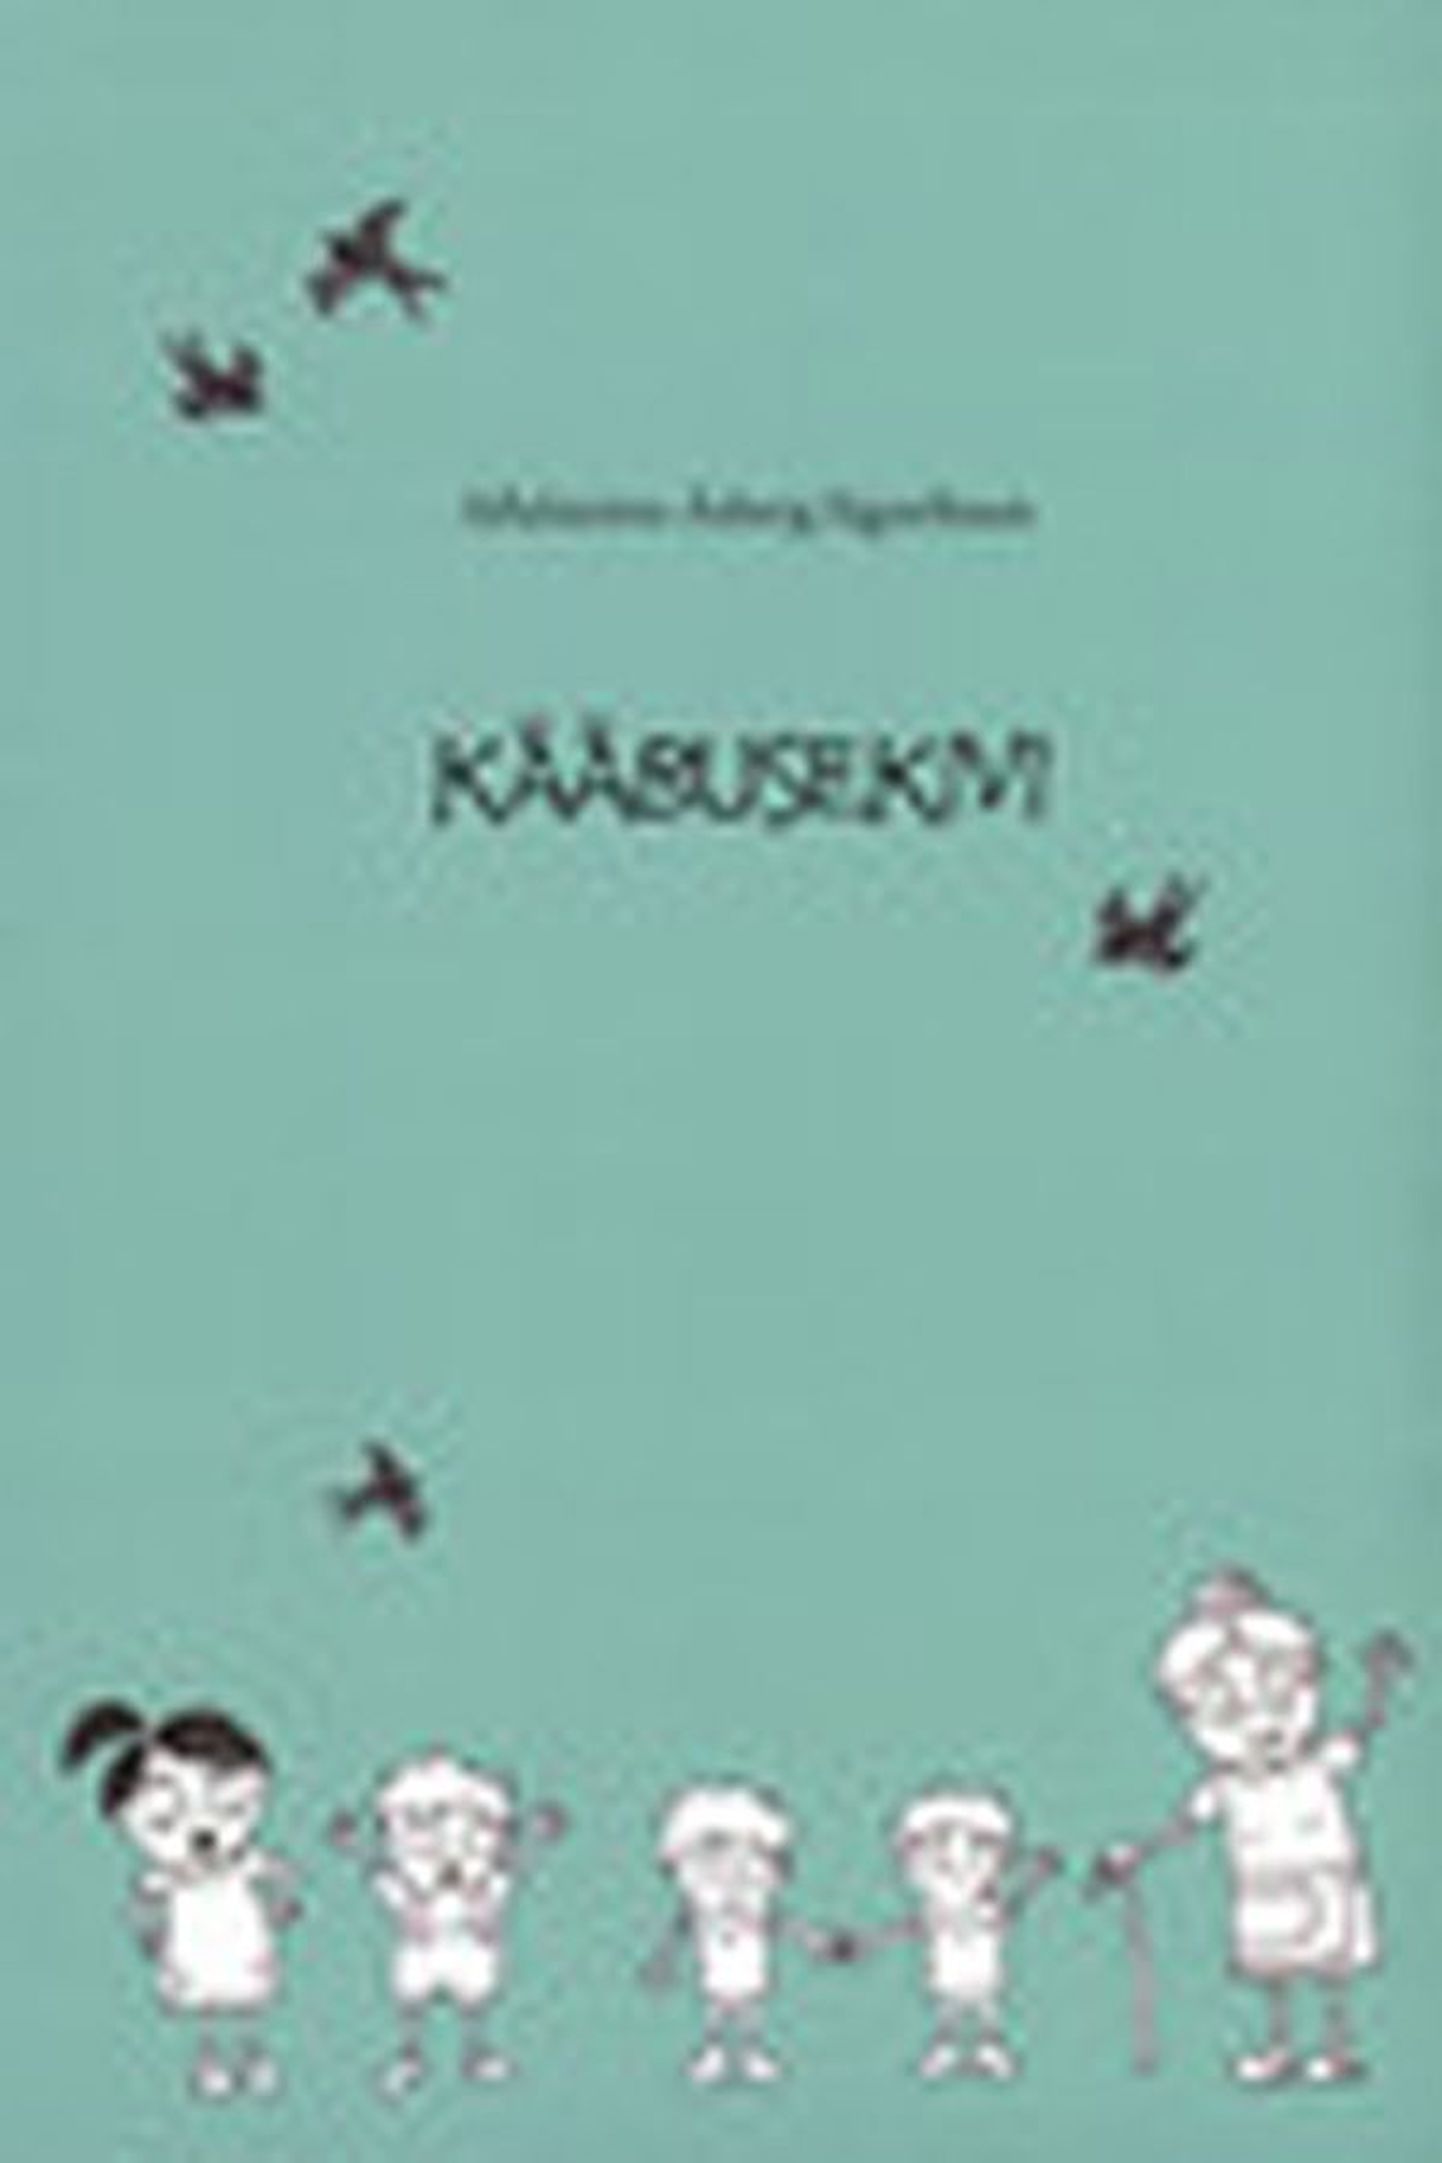 Raamat 
Adalsteinn Asberg Sigurdsson
«Kääbusekivi» 
Islandi keelest tõlkinud Toomas Lapp
NyNorden 2010, 117 lk